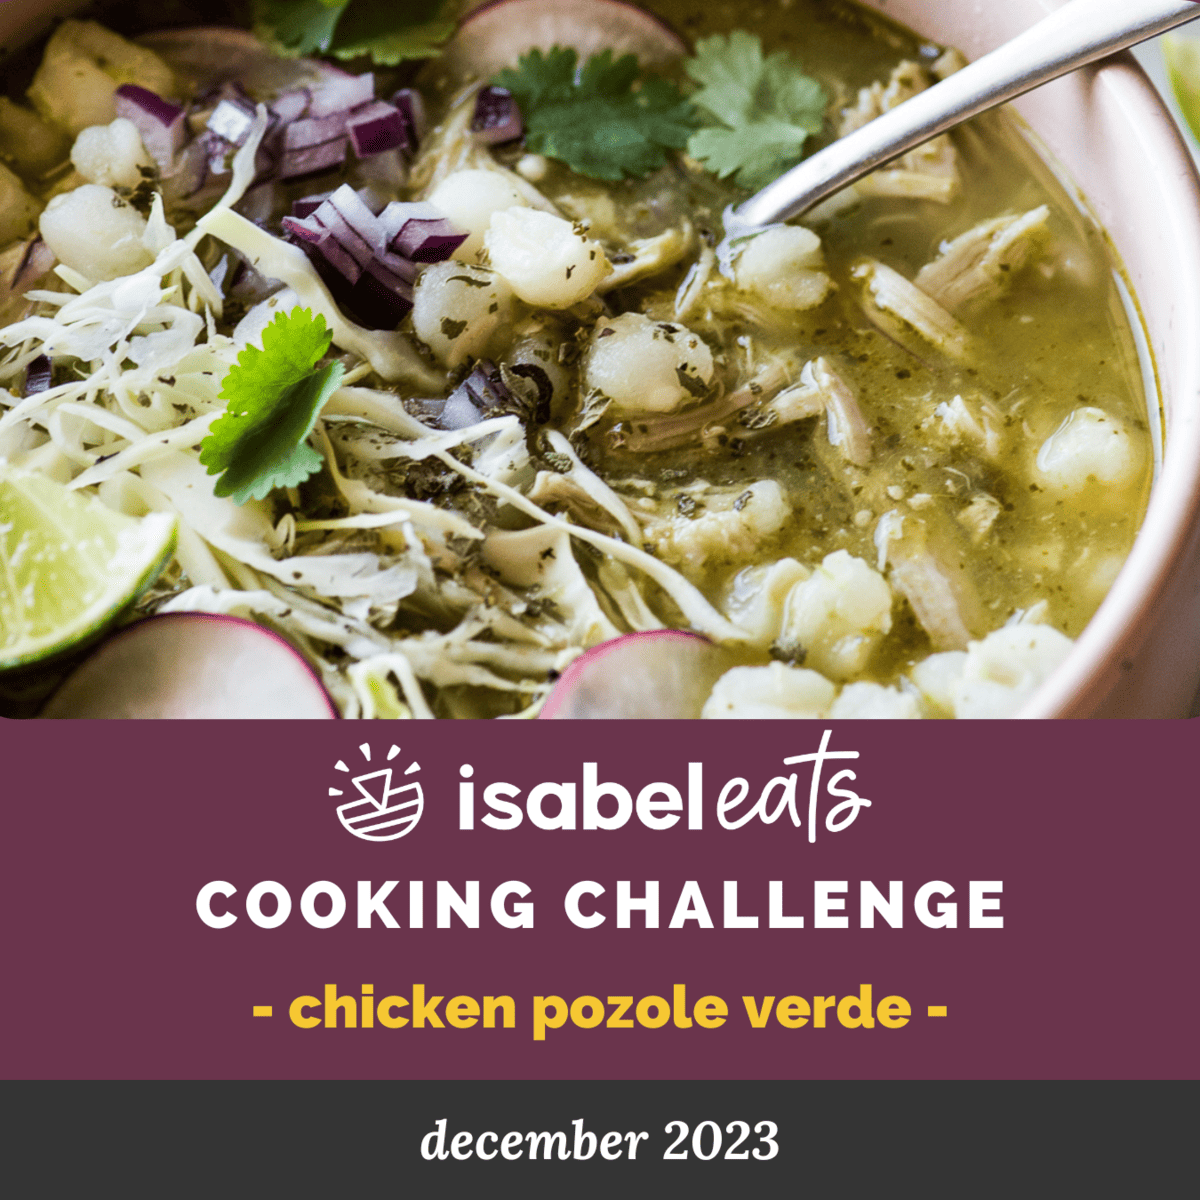 December 2023 Cooking Challenge